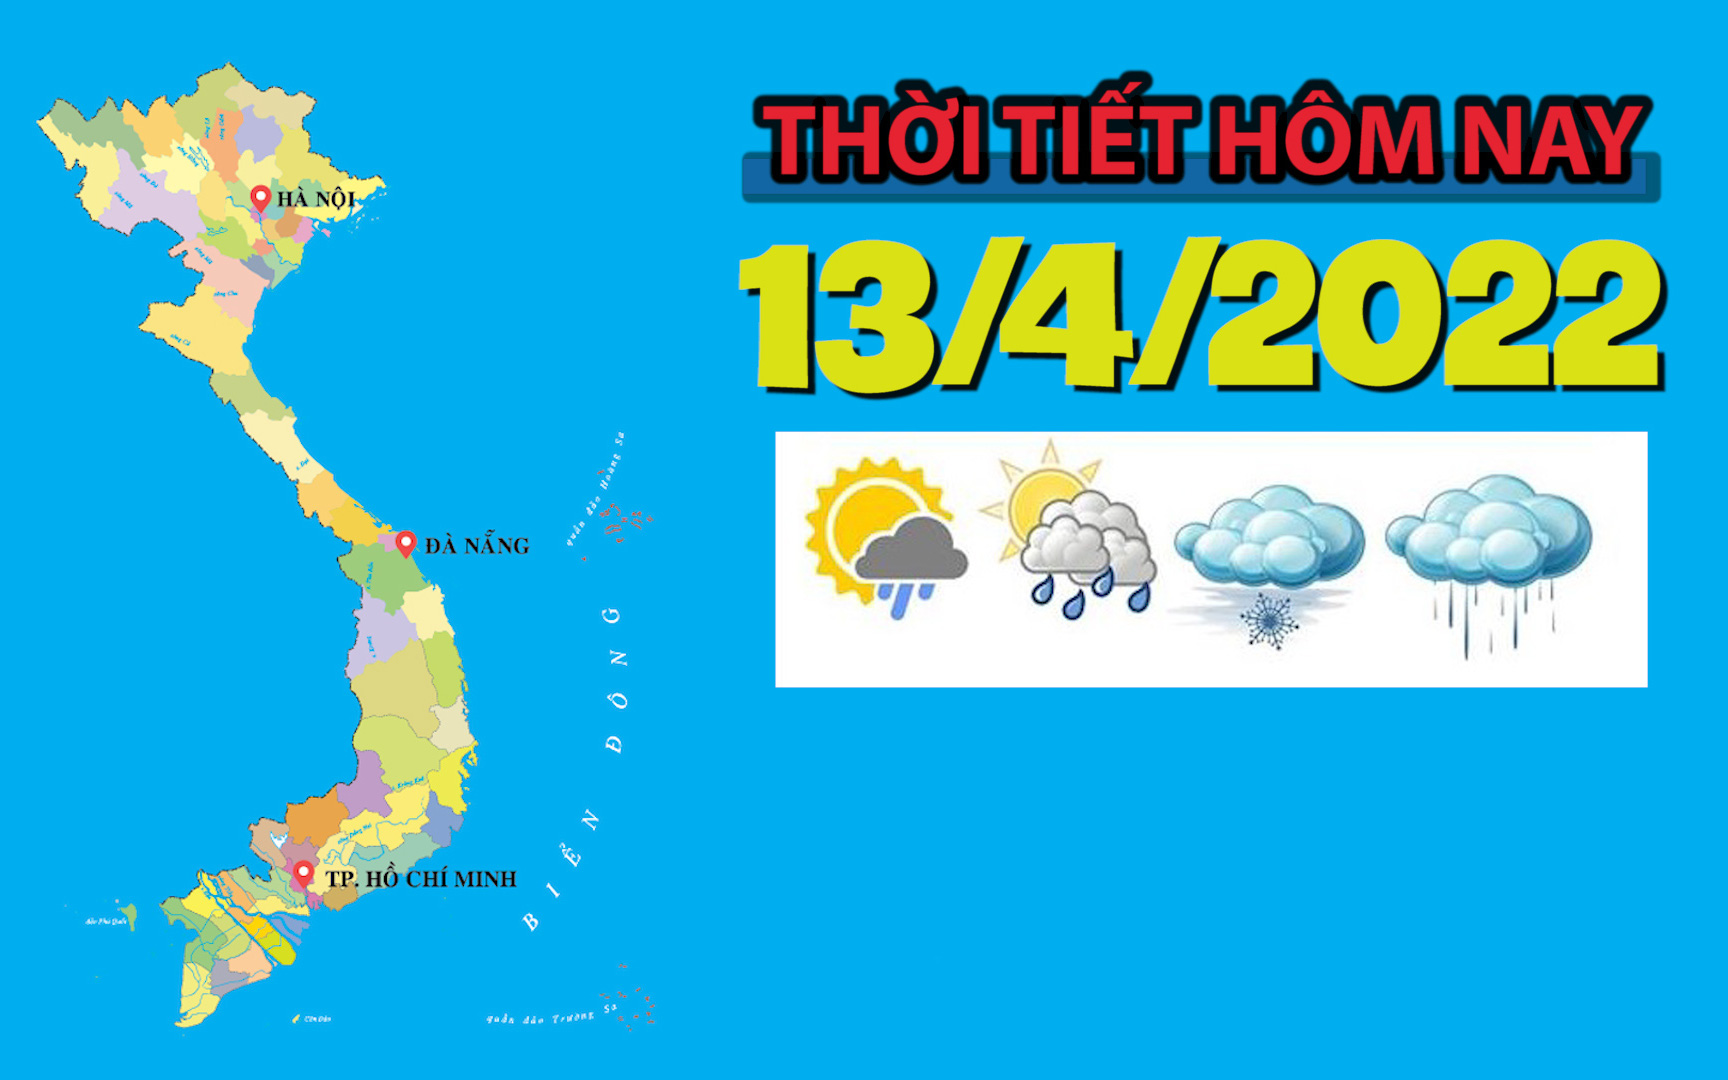 Thời tiết hôm nay 13/4/2022: Khu vực Hà Nội có mưa vài nơi, trưa chiều trời nắng